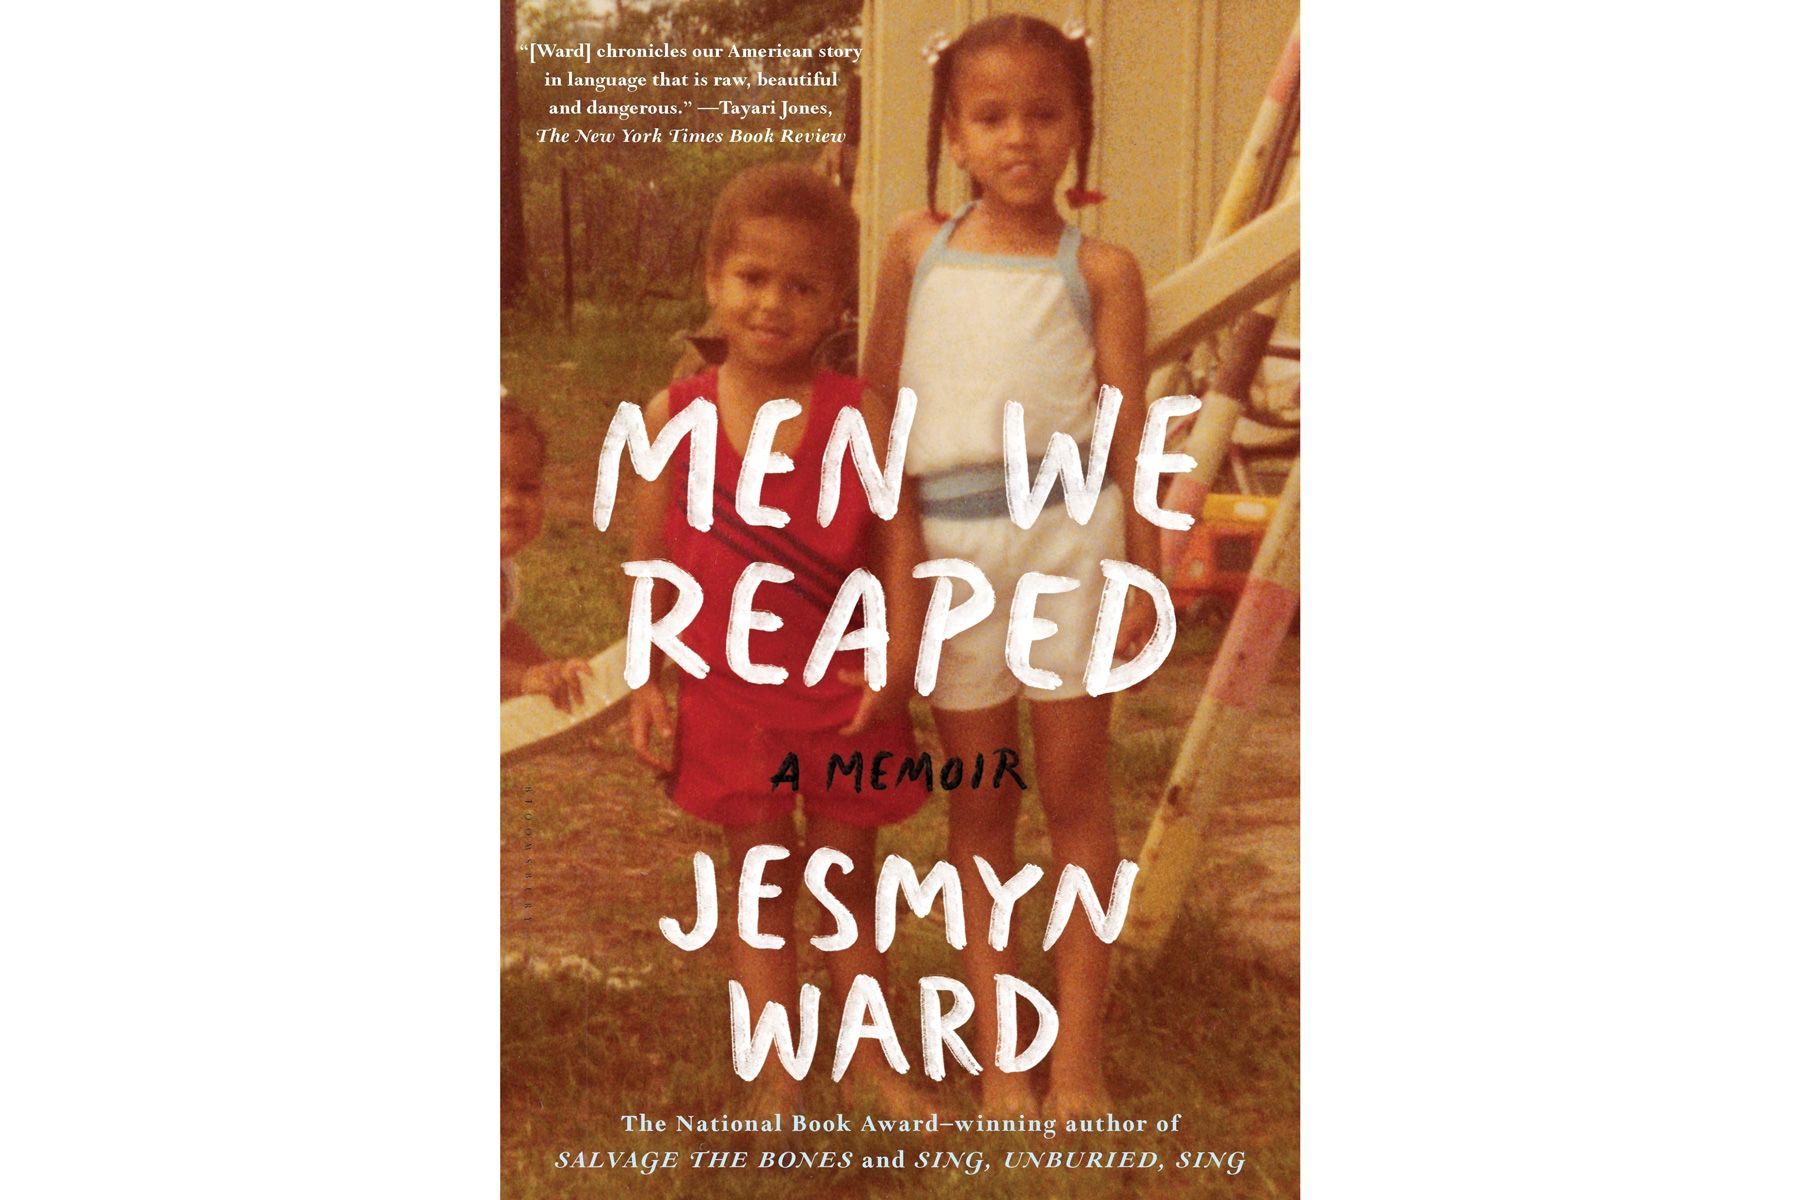 Men Men Reaped, Jesmyn Ward